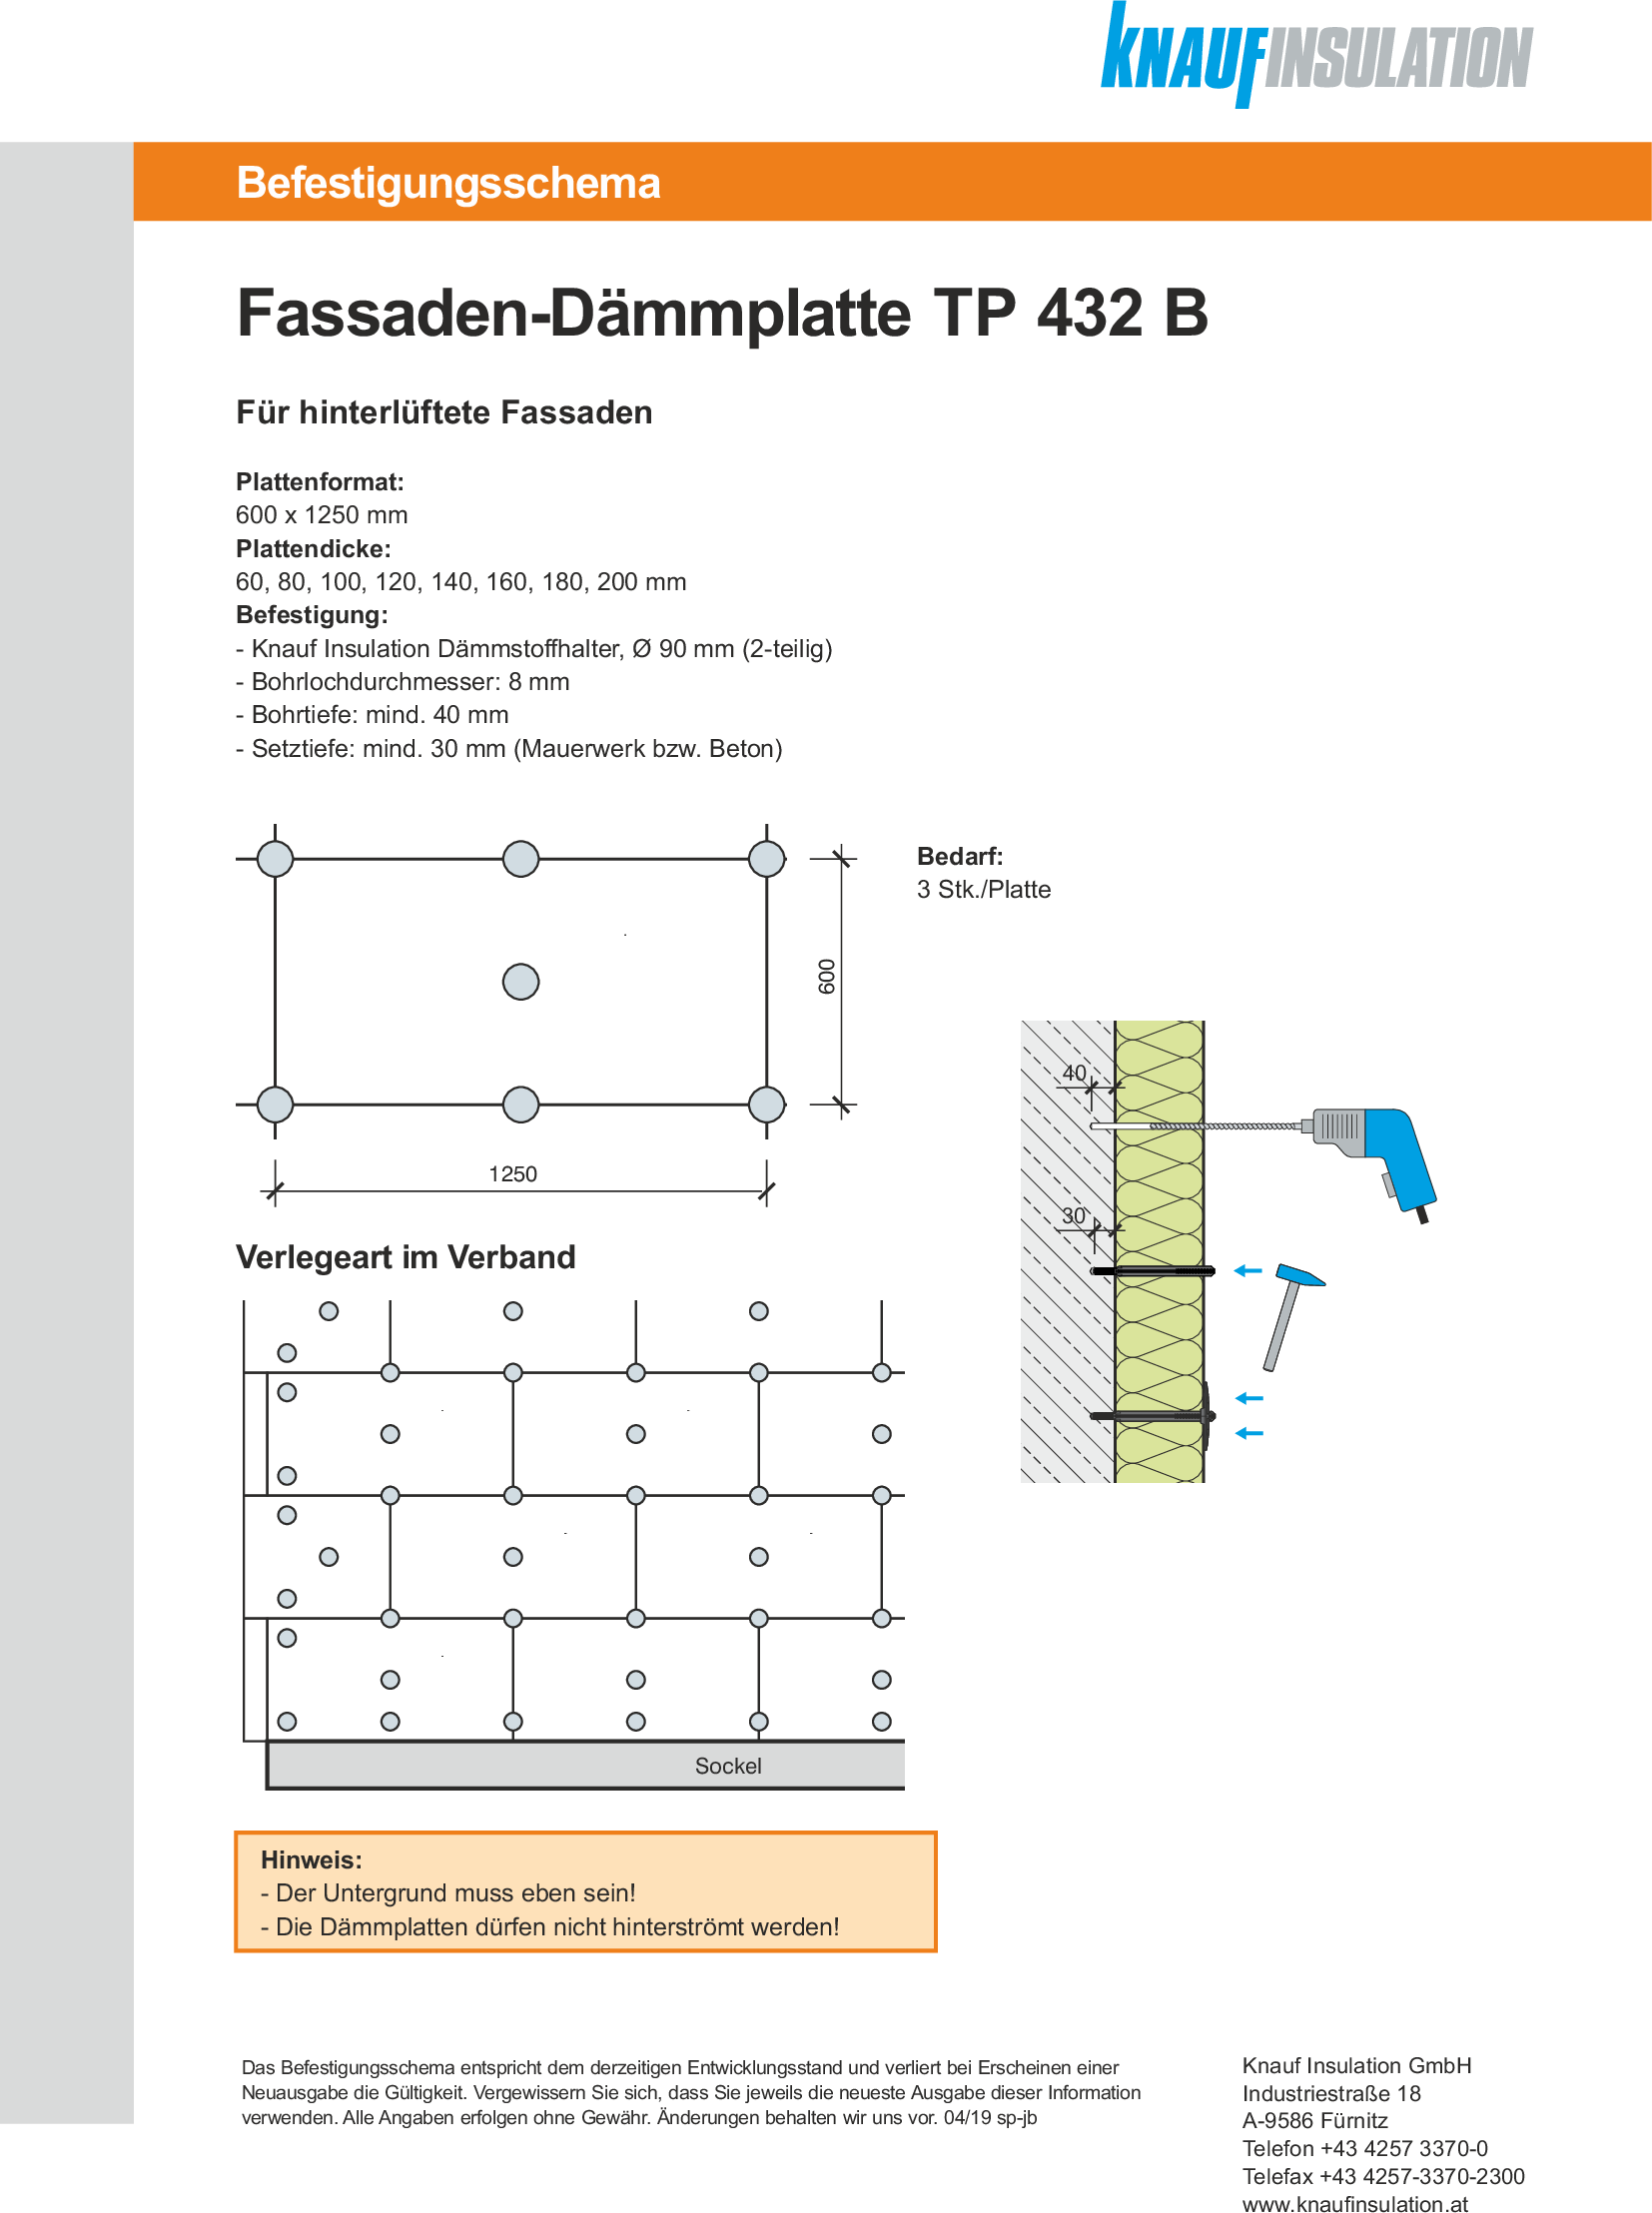 Fassaden-Dämmplatte TP 432 B, Befestigungsschema